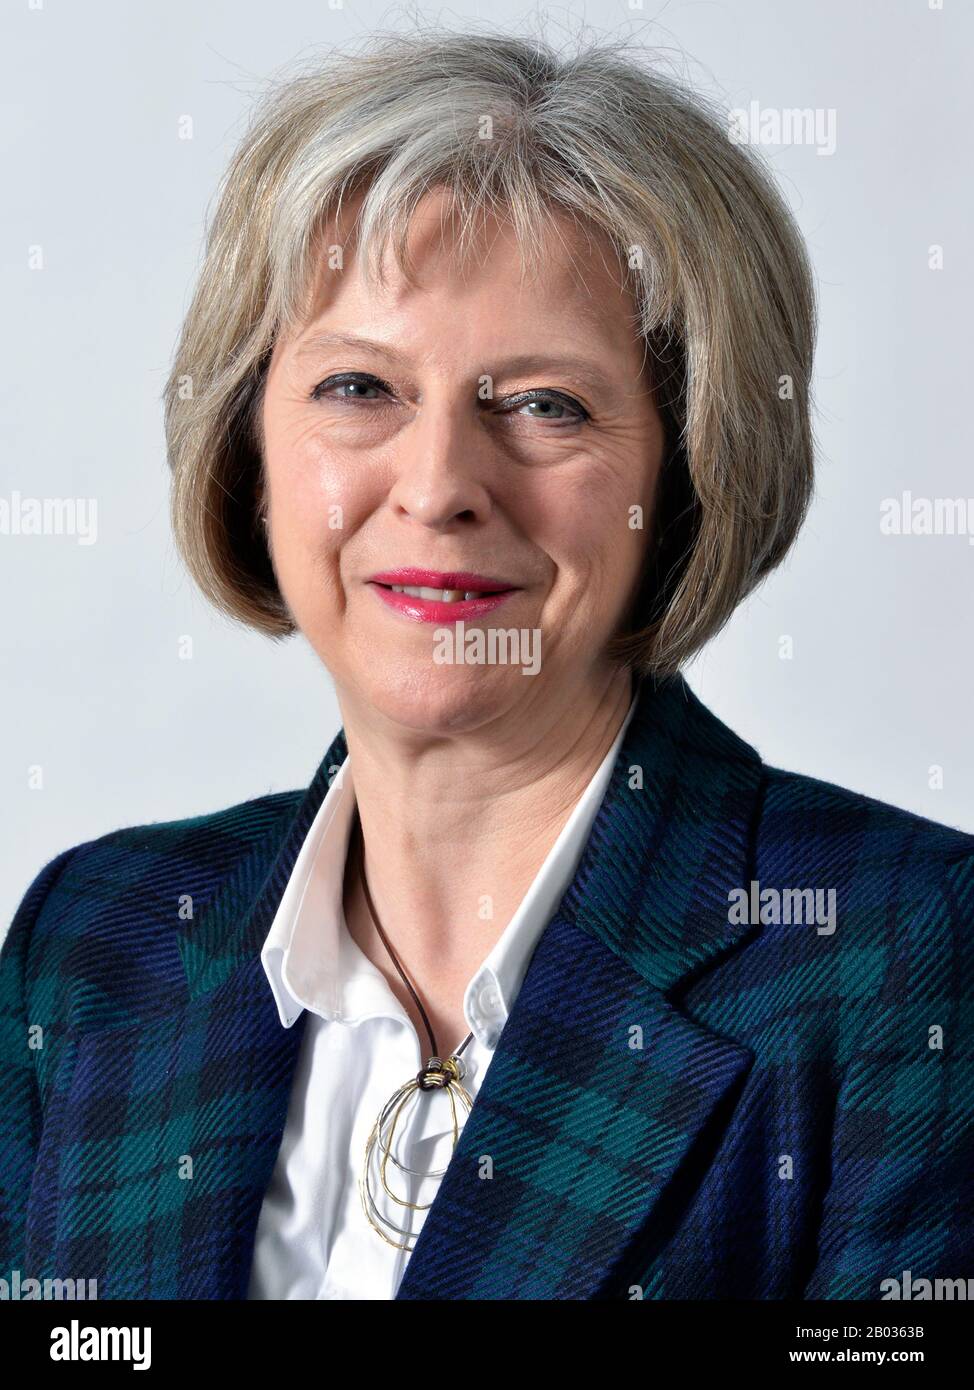 Theresa Mary May, PC, MP (Londra, 1 ottobre 1956) è il primo ministro del Regno Unito e leader del Partito conservatore, in carica dal luglio 2016. Dal 1997 è membro del Parlamento europeo per la circoscrizione di Maidenhead. Può identificarsi come un conservatore di una nazione ed è stato caratterizzato come un conservatore liberale e democratico cristiano. È la seconda donna del partito conservatore e primo ministro, dopo Margaret Thatcher. Foto Stock